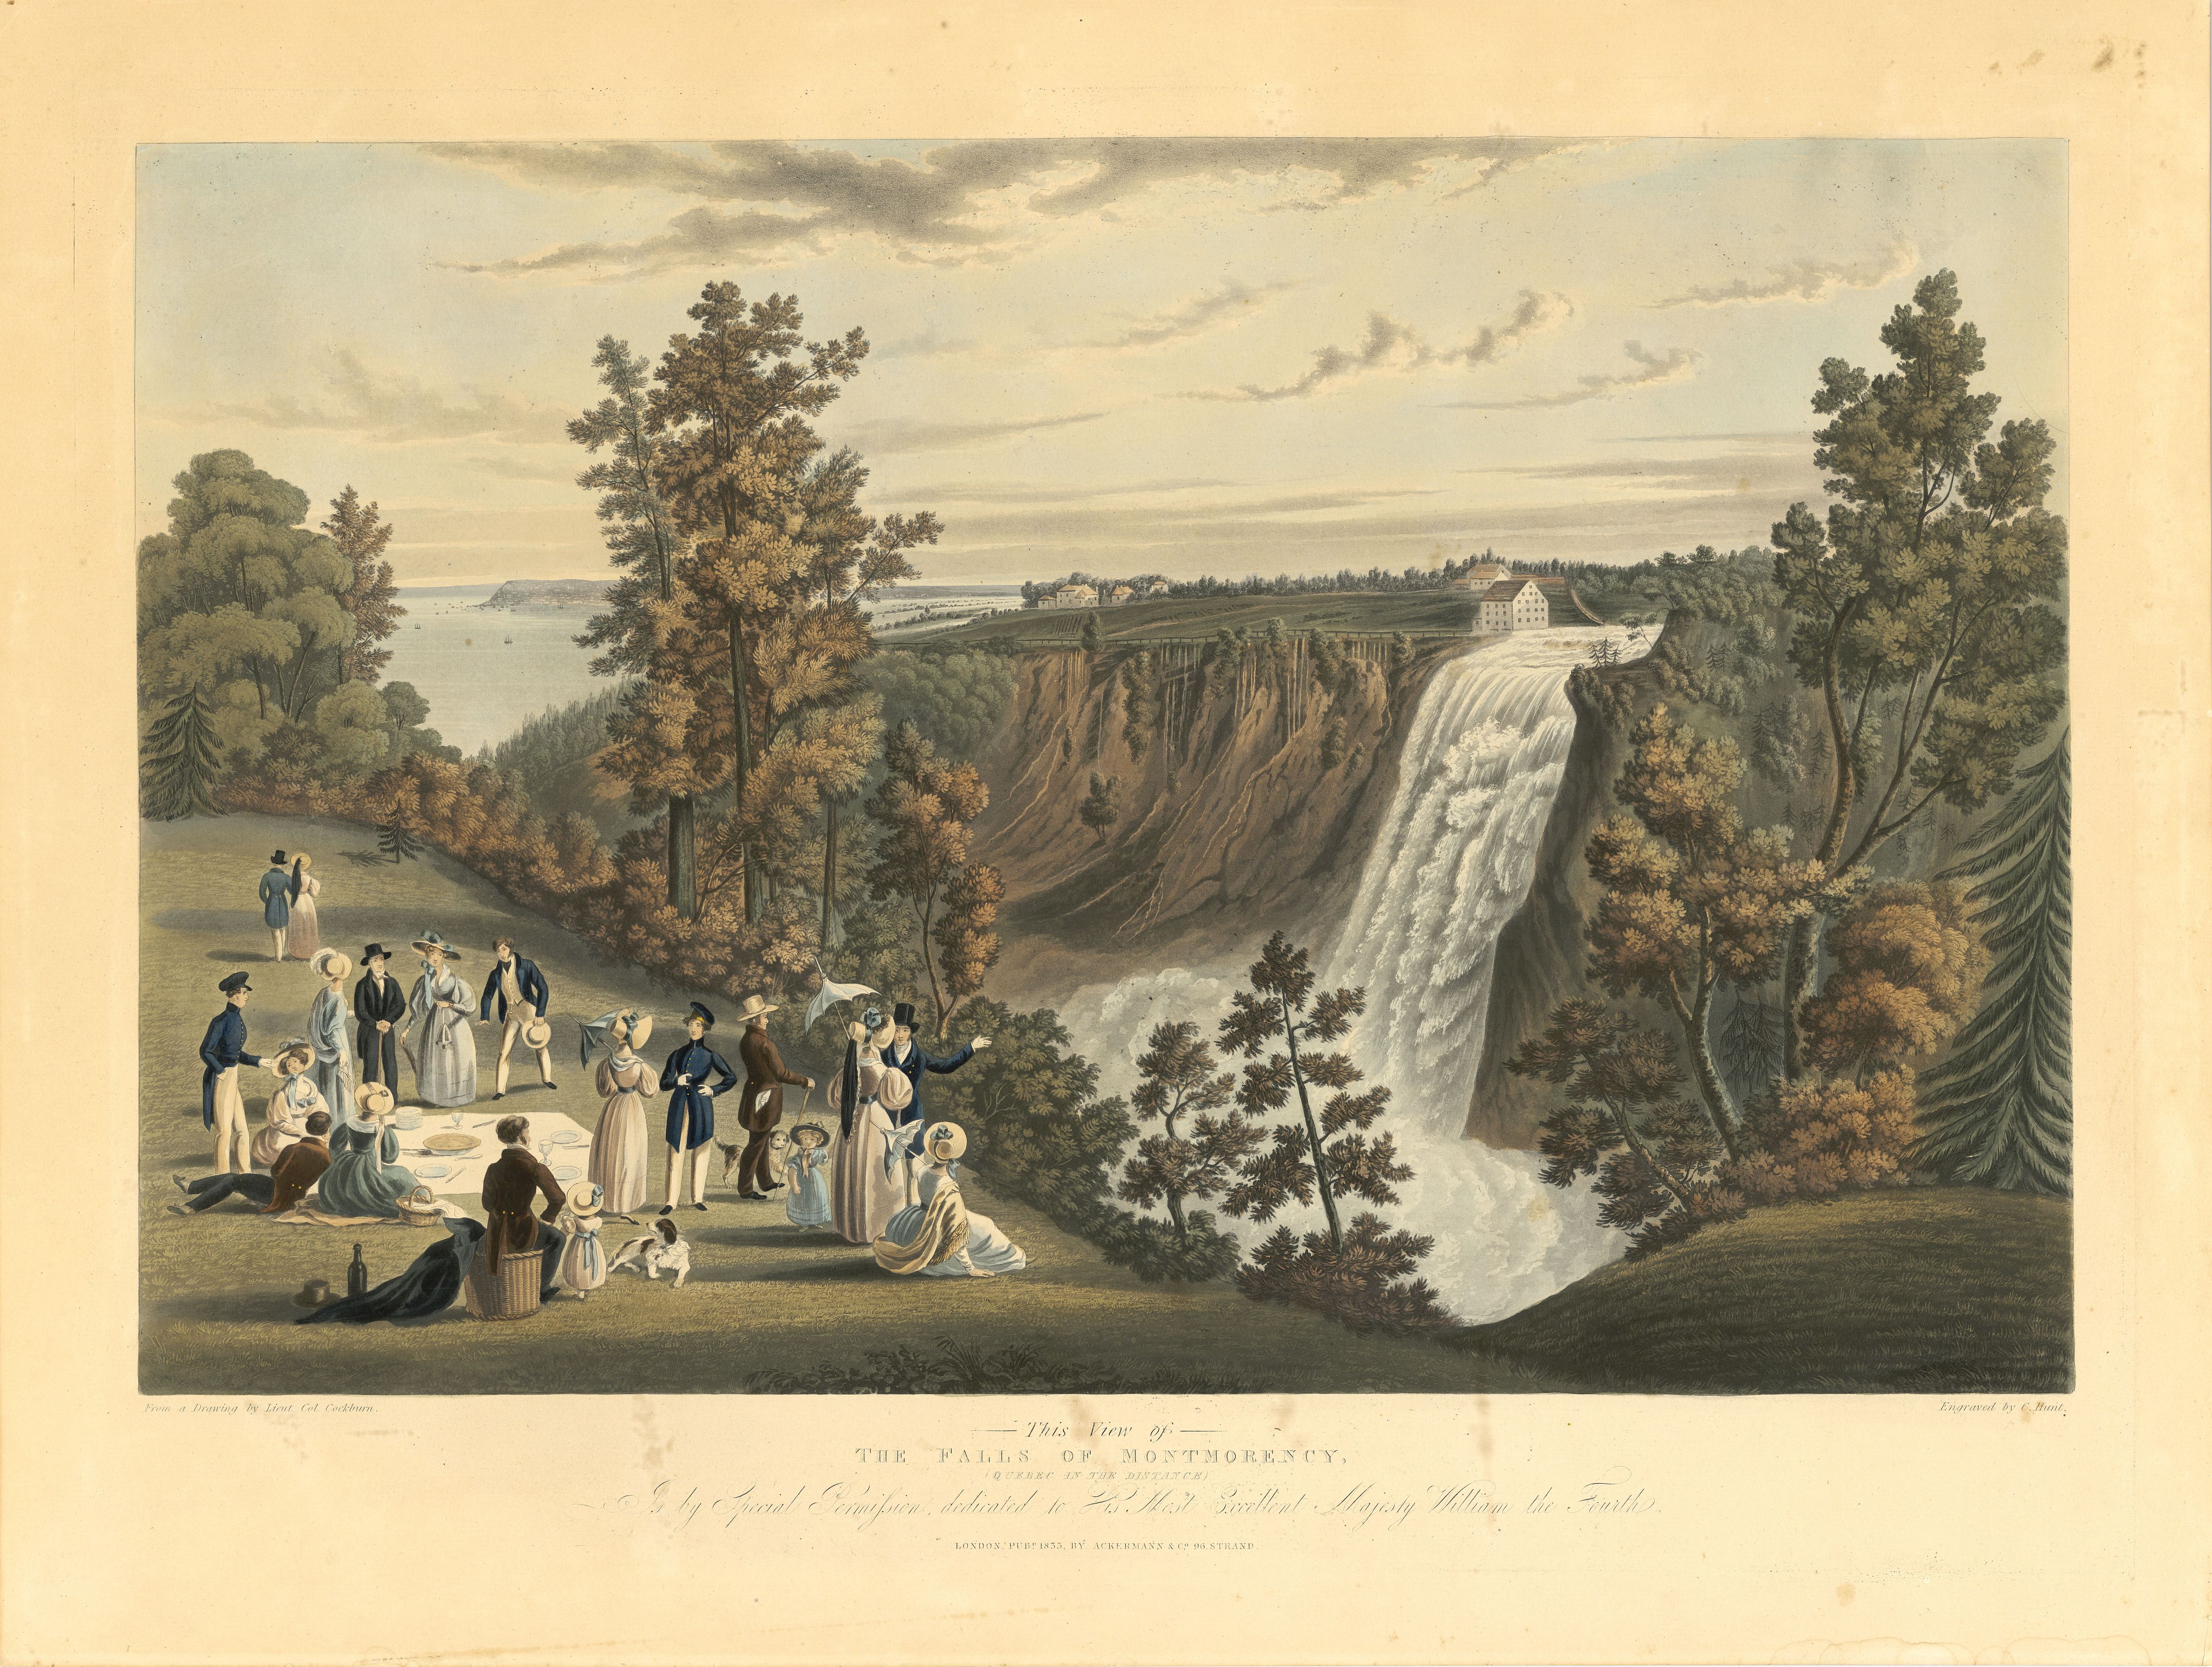 Vue des chutes Montmorency, gravure de James Pattison Cockburn publiée à Londres en 1833.